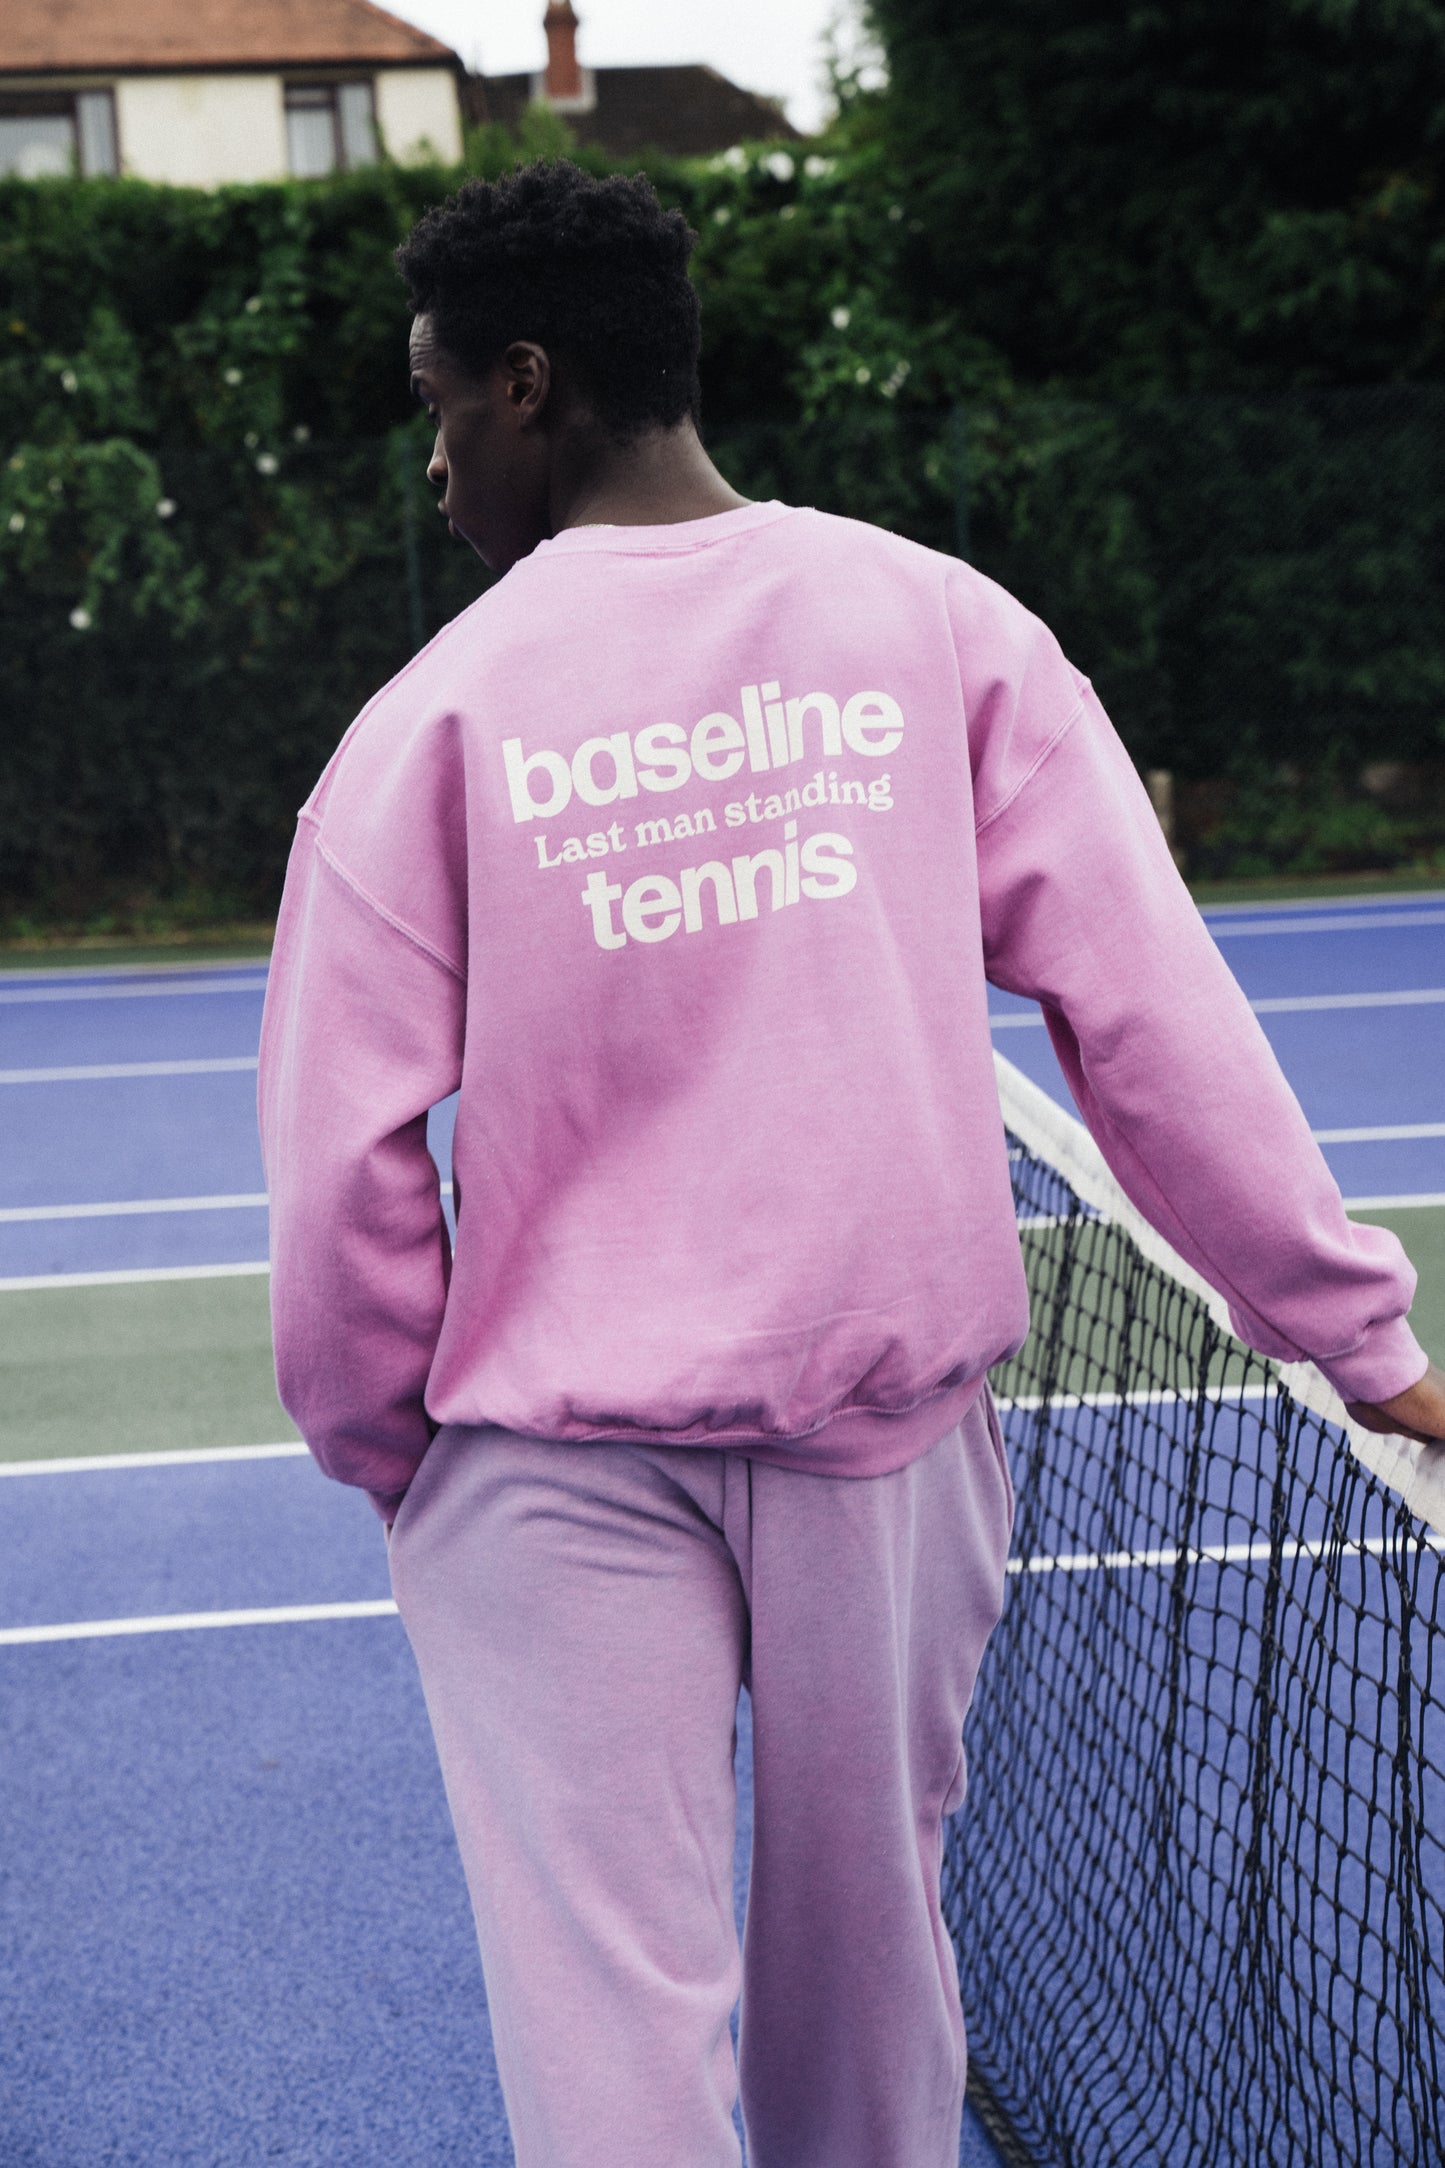 Vice 84 'Baseline' Sweater - Vintage Washed Rose Pink